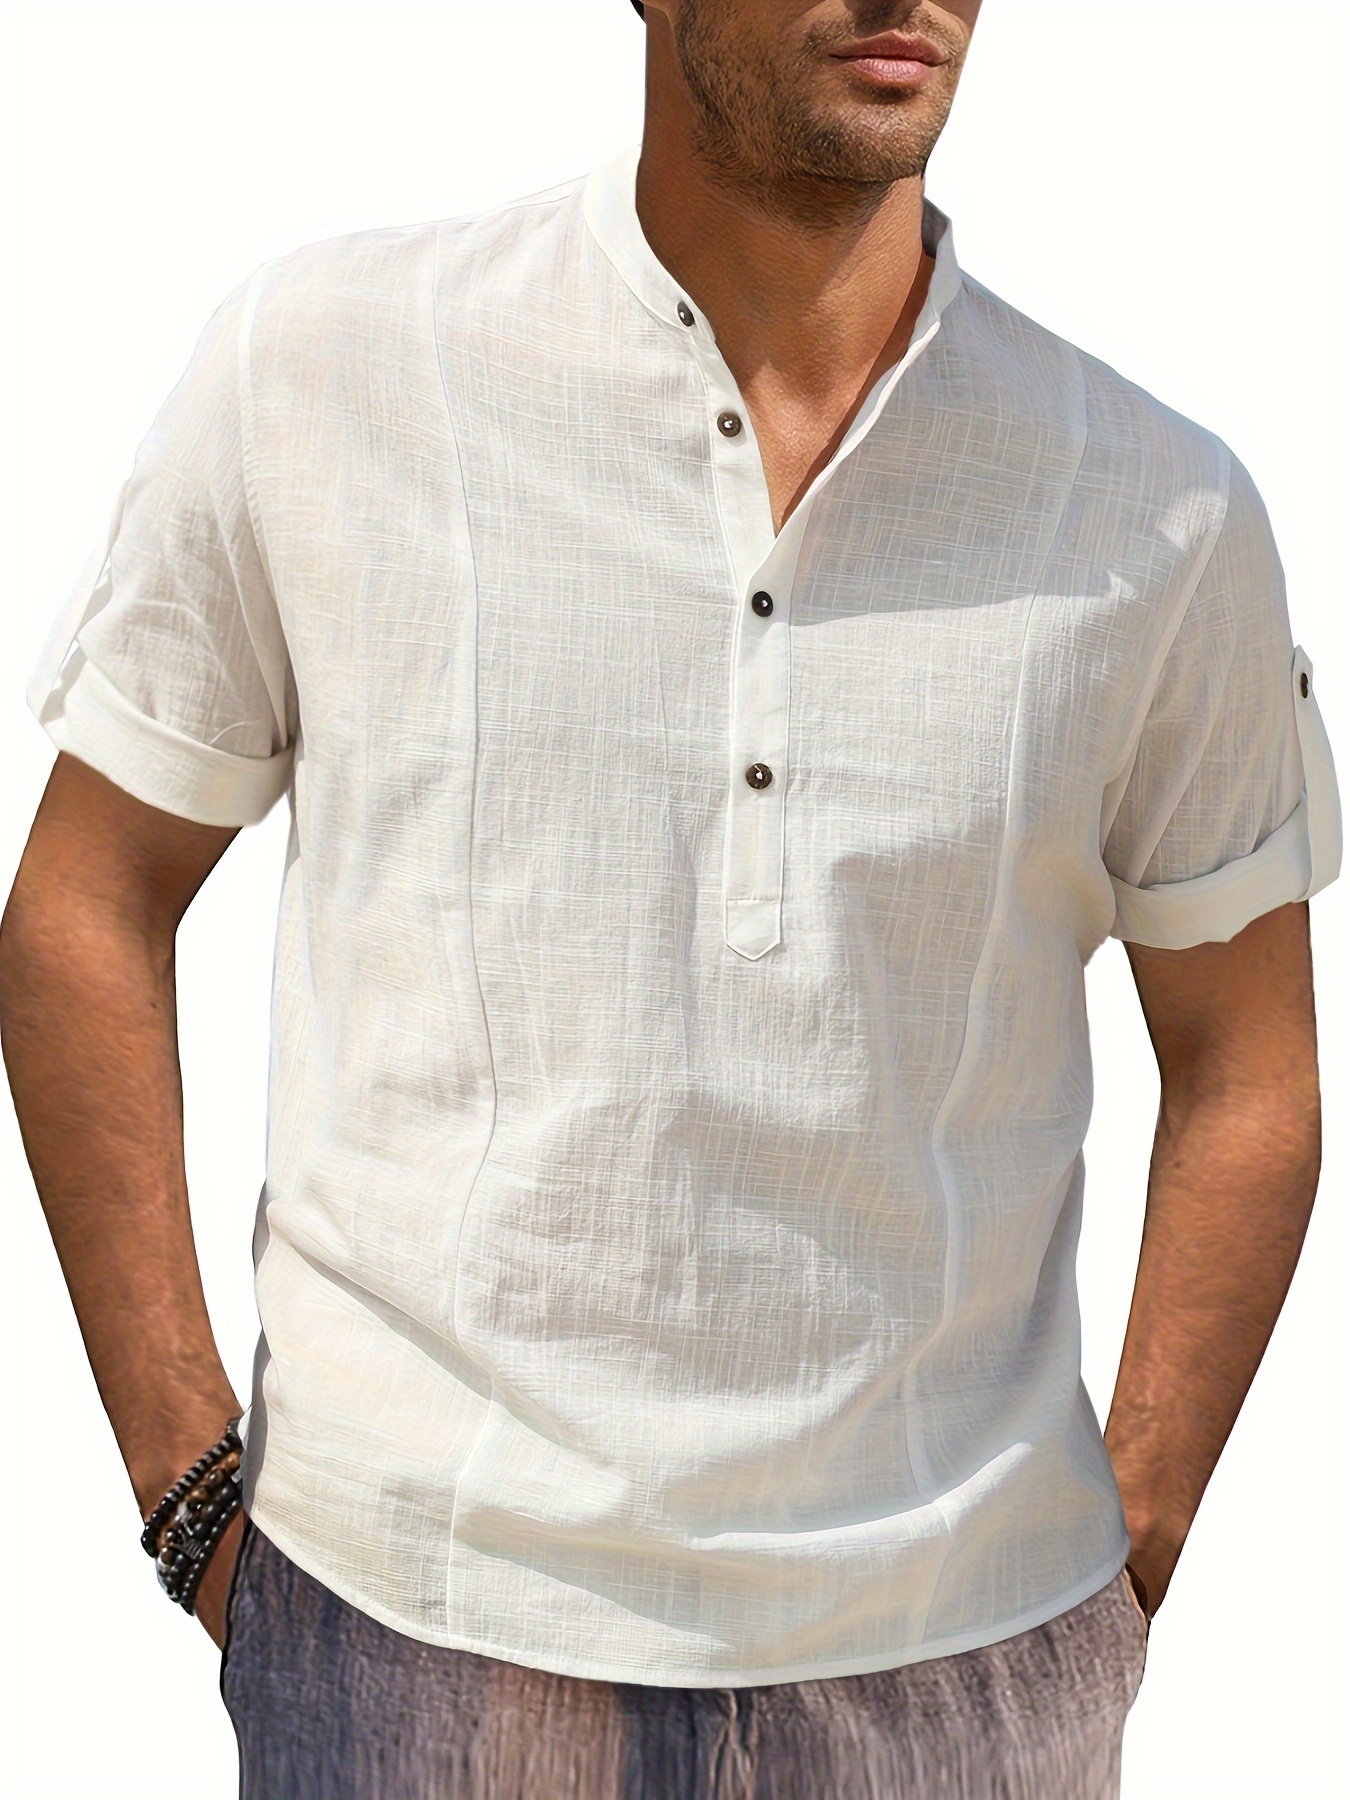 Men's Short Sleeve Work T-Shirt Tops Cotton Linen Summer Button Shirt  Blouse